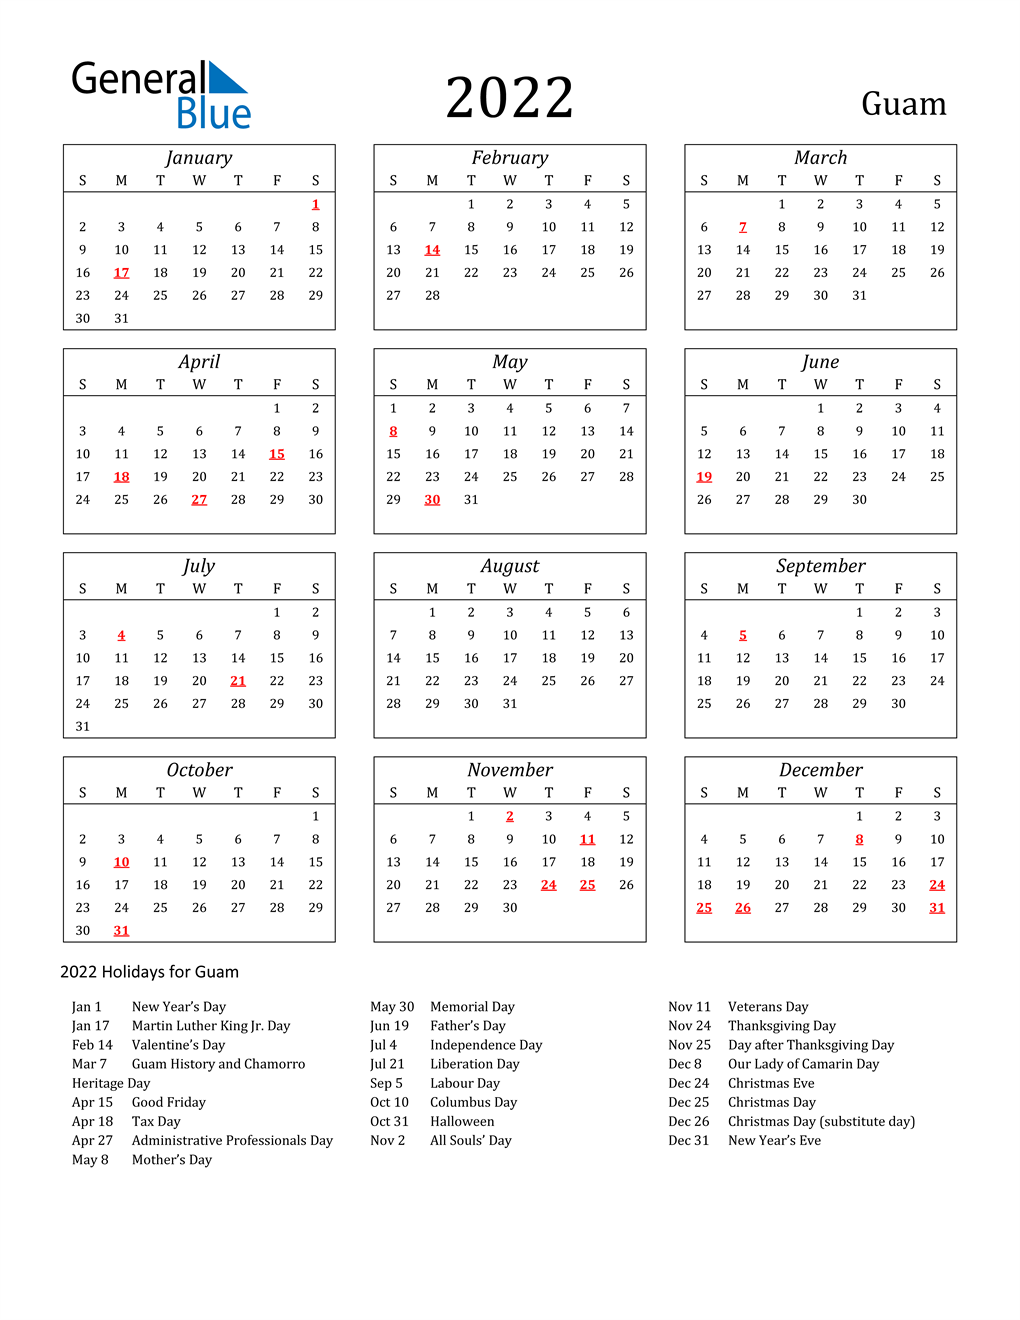 2022 Guam Calendar with Holidays